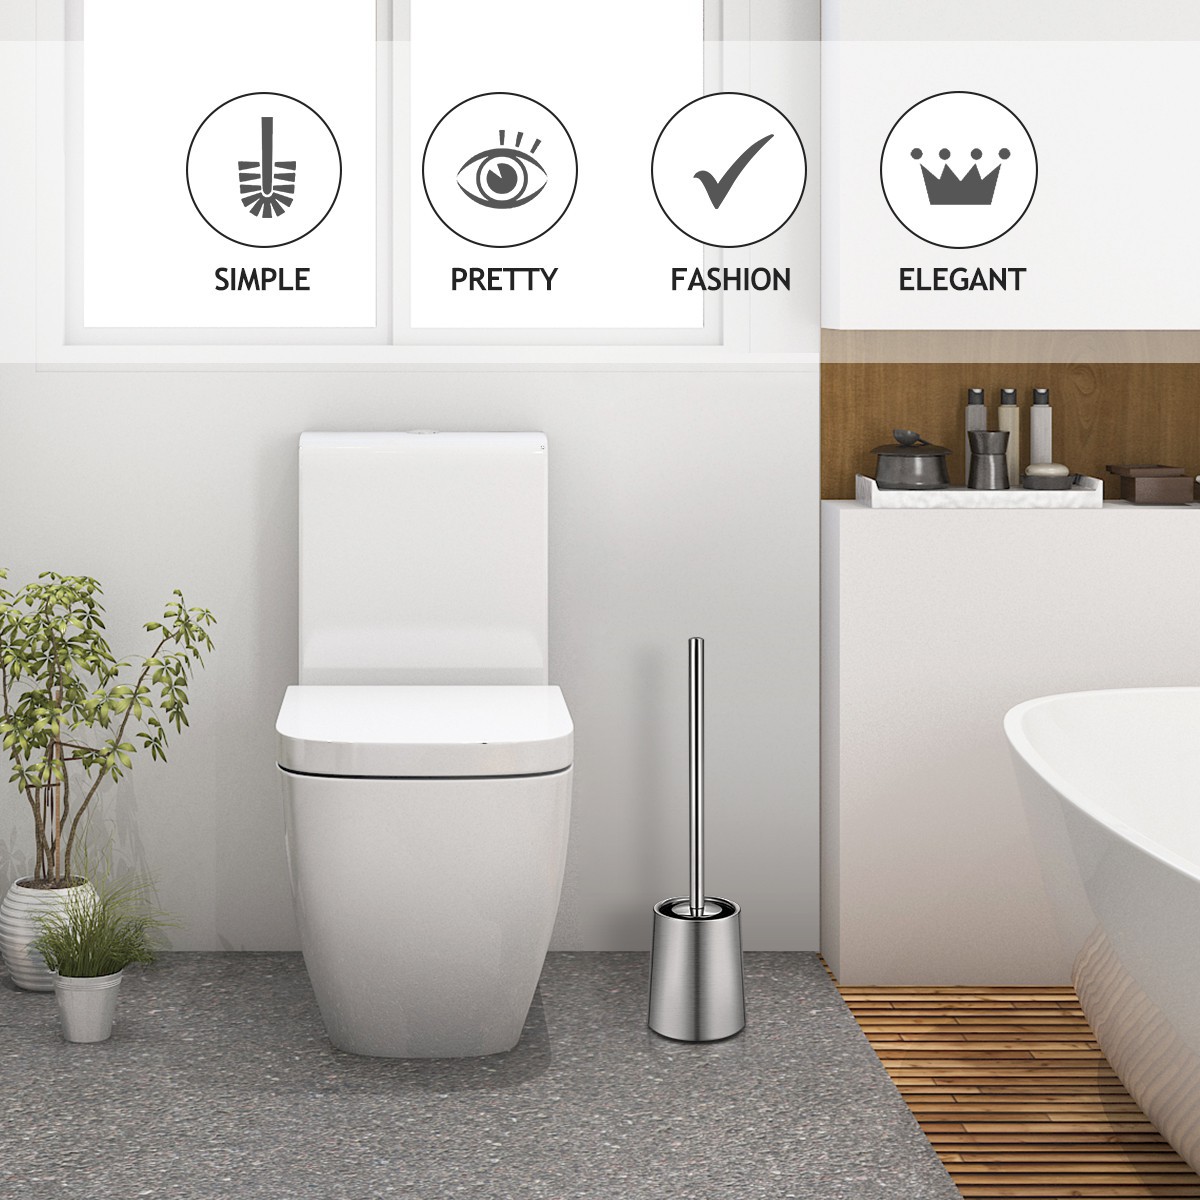 HOMEMAXS 2PCS Toilet Brushs With Holder Good Grip Stainless Steel Toilet Bowl Cleaner Brush Set for Bathroom (Sanding)